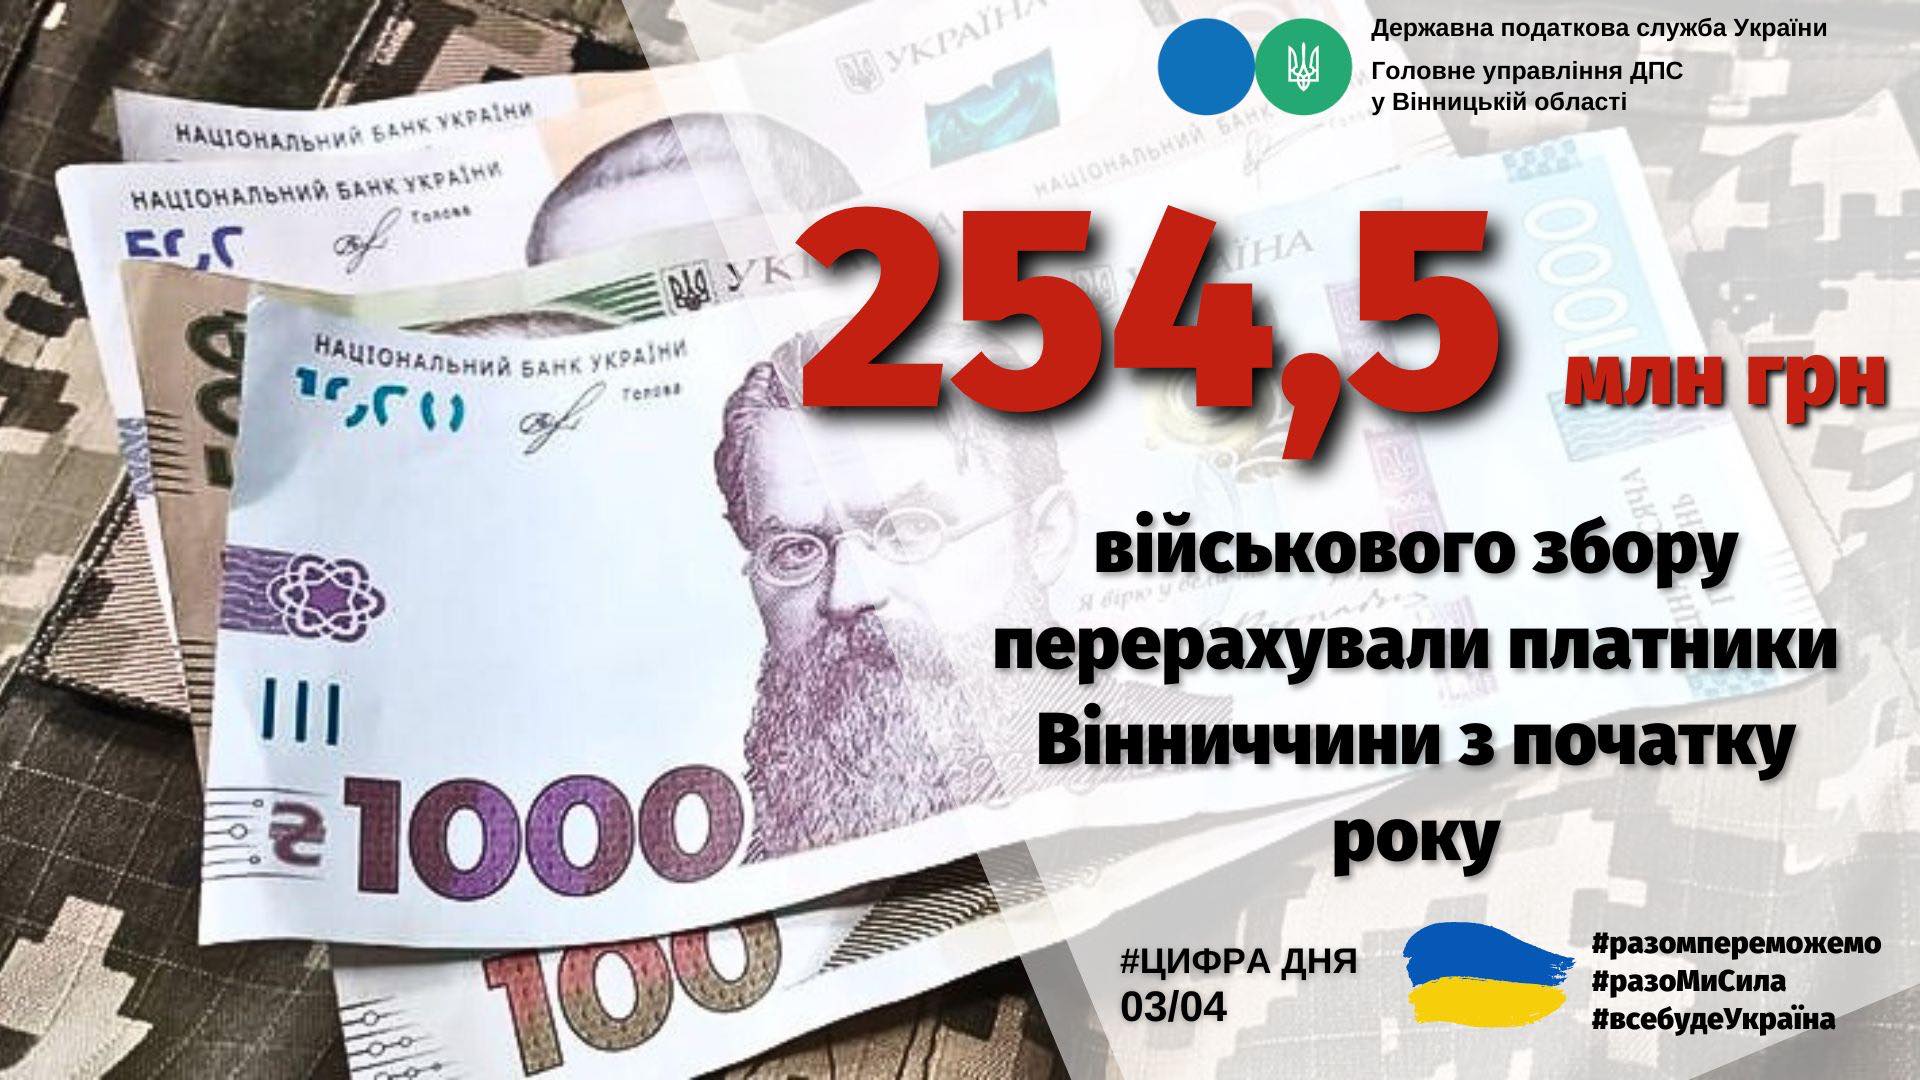 Зображення з написом "254,5 млн грн військового збору перерахували платники Вінниччини з початку року"